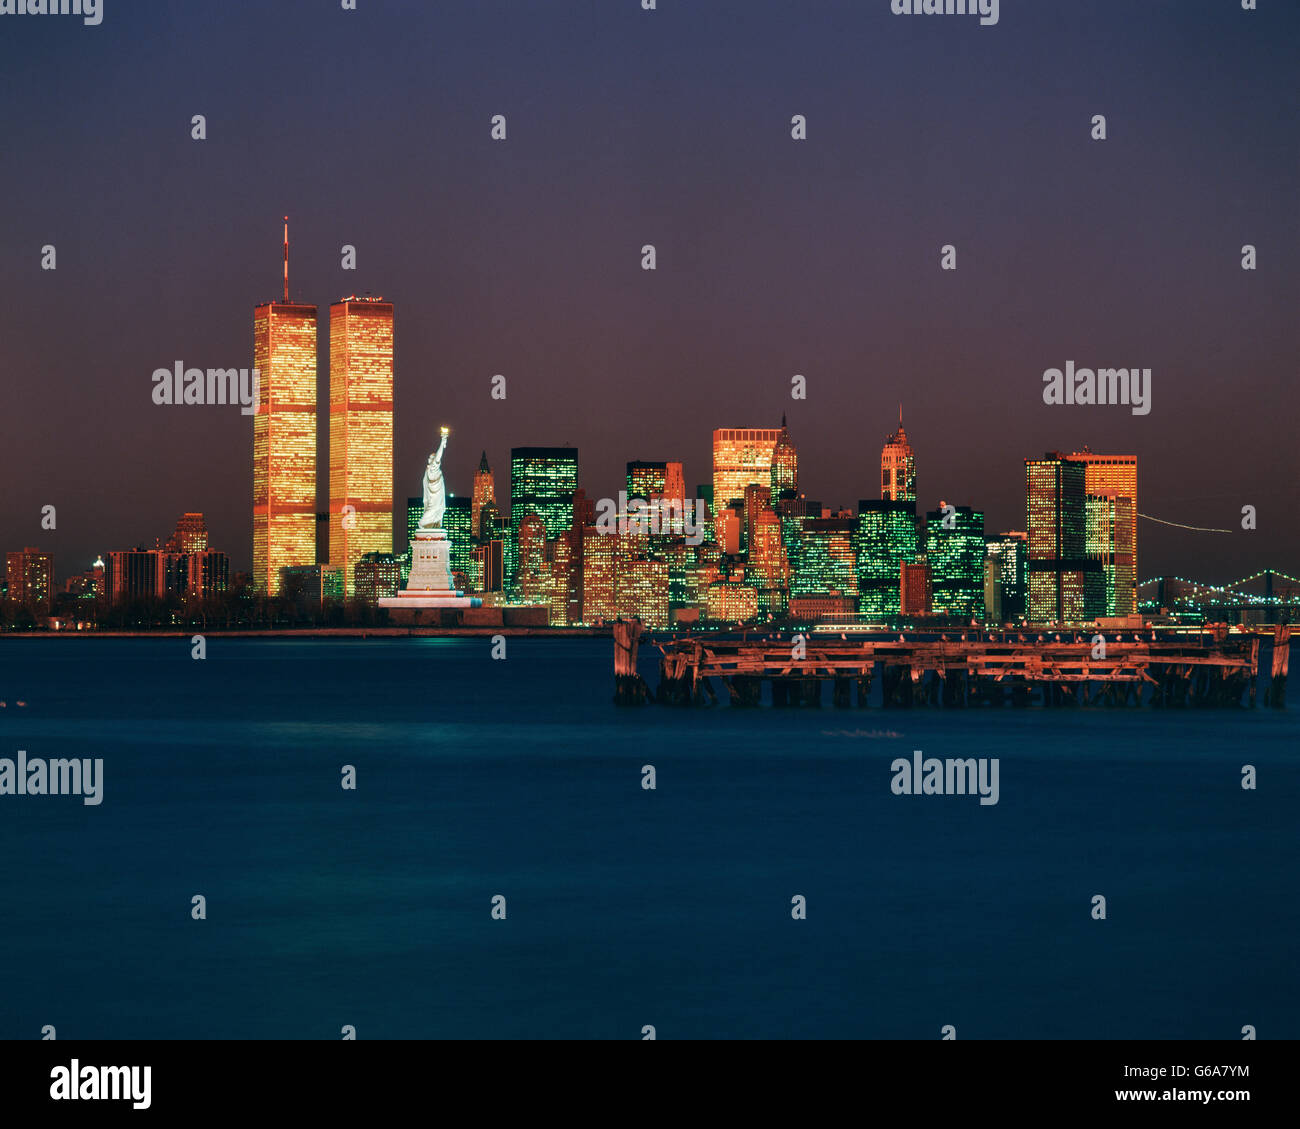 Poster New York City night skyline Manhattan buildings midtown